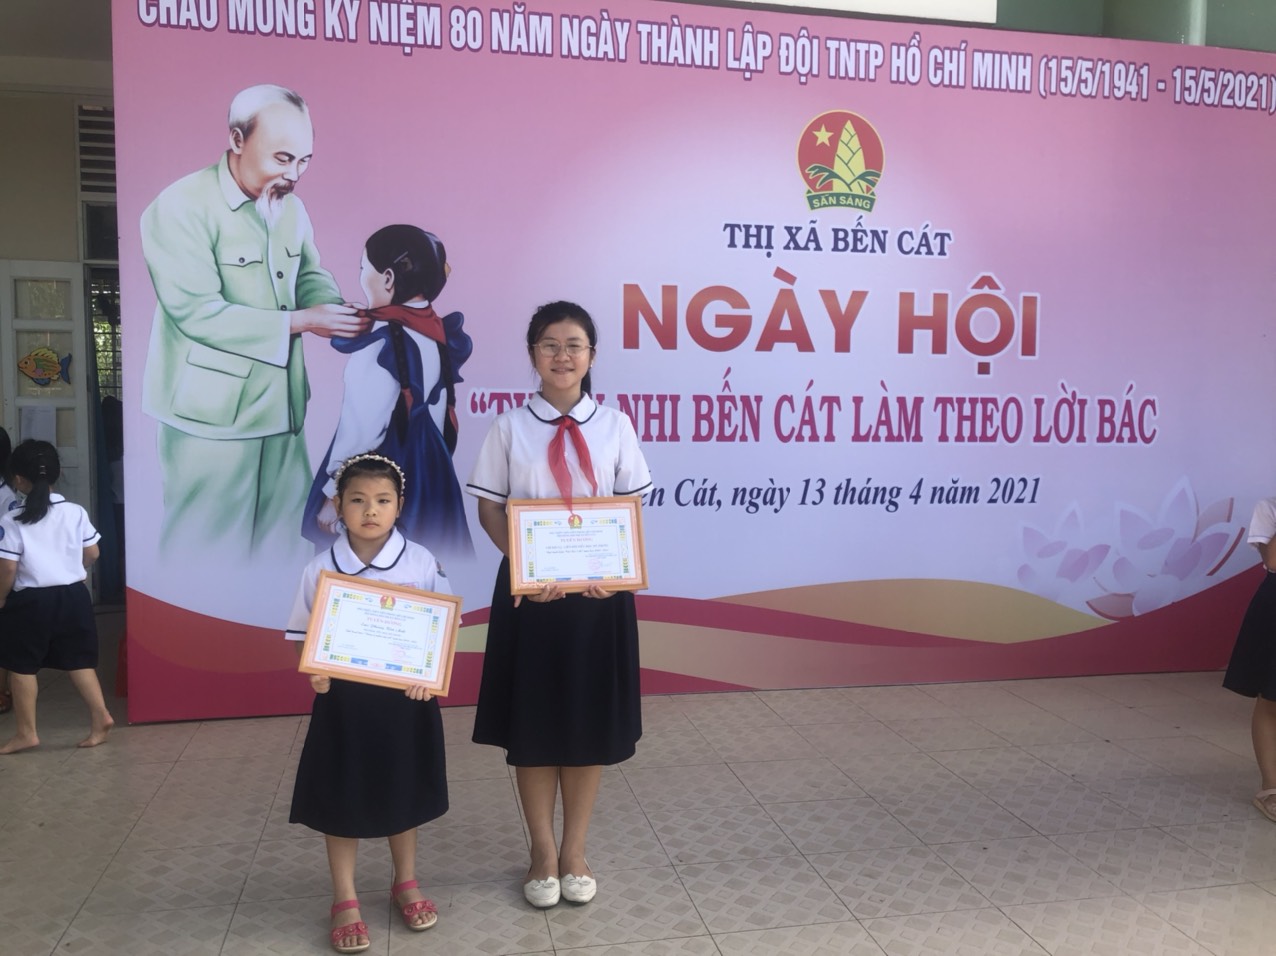 Hoạt động chào mừng 80 năm thành lập Đội TNTP Hồ Chí Minh do Thị đoàn Thị xã Bến Cát tổ chức